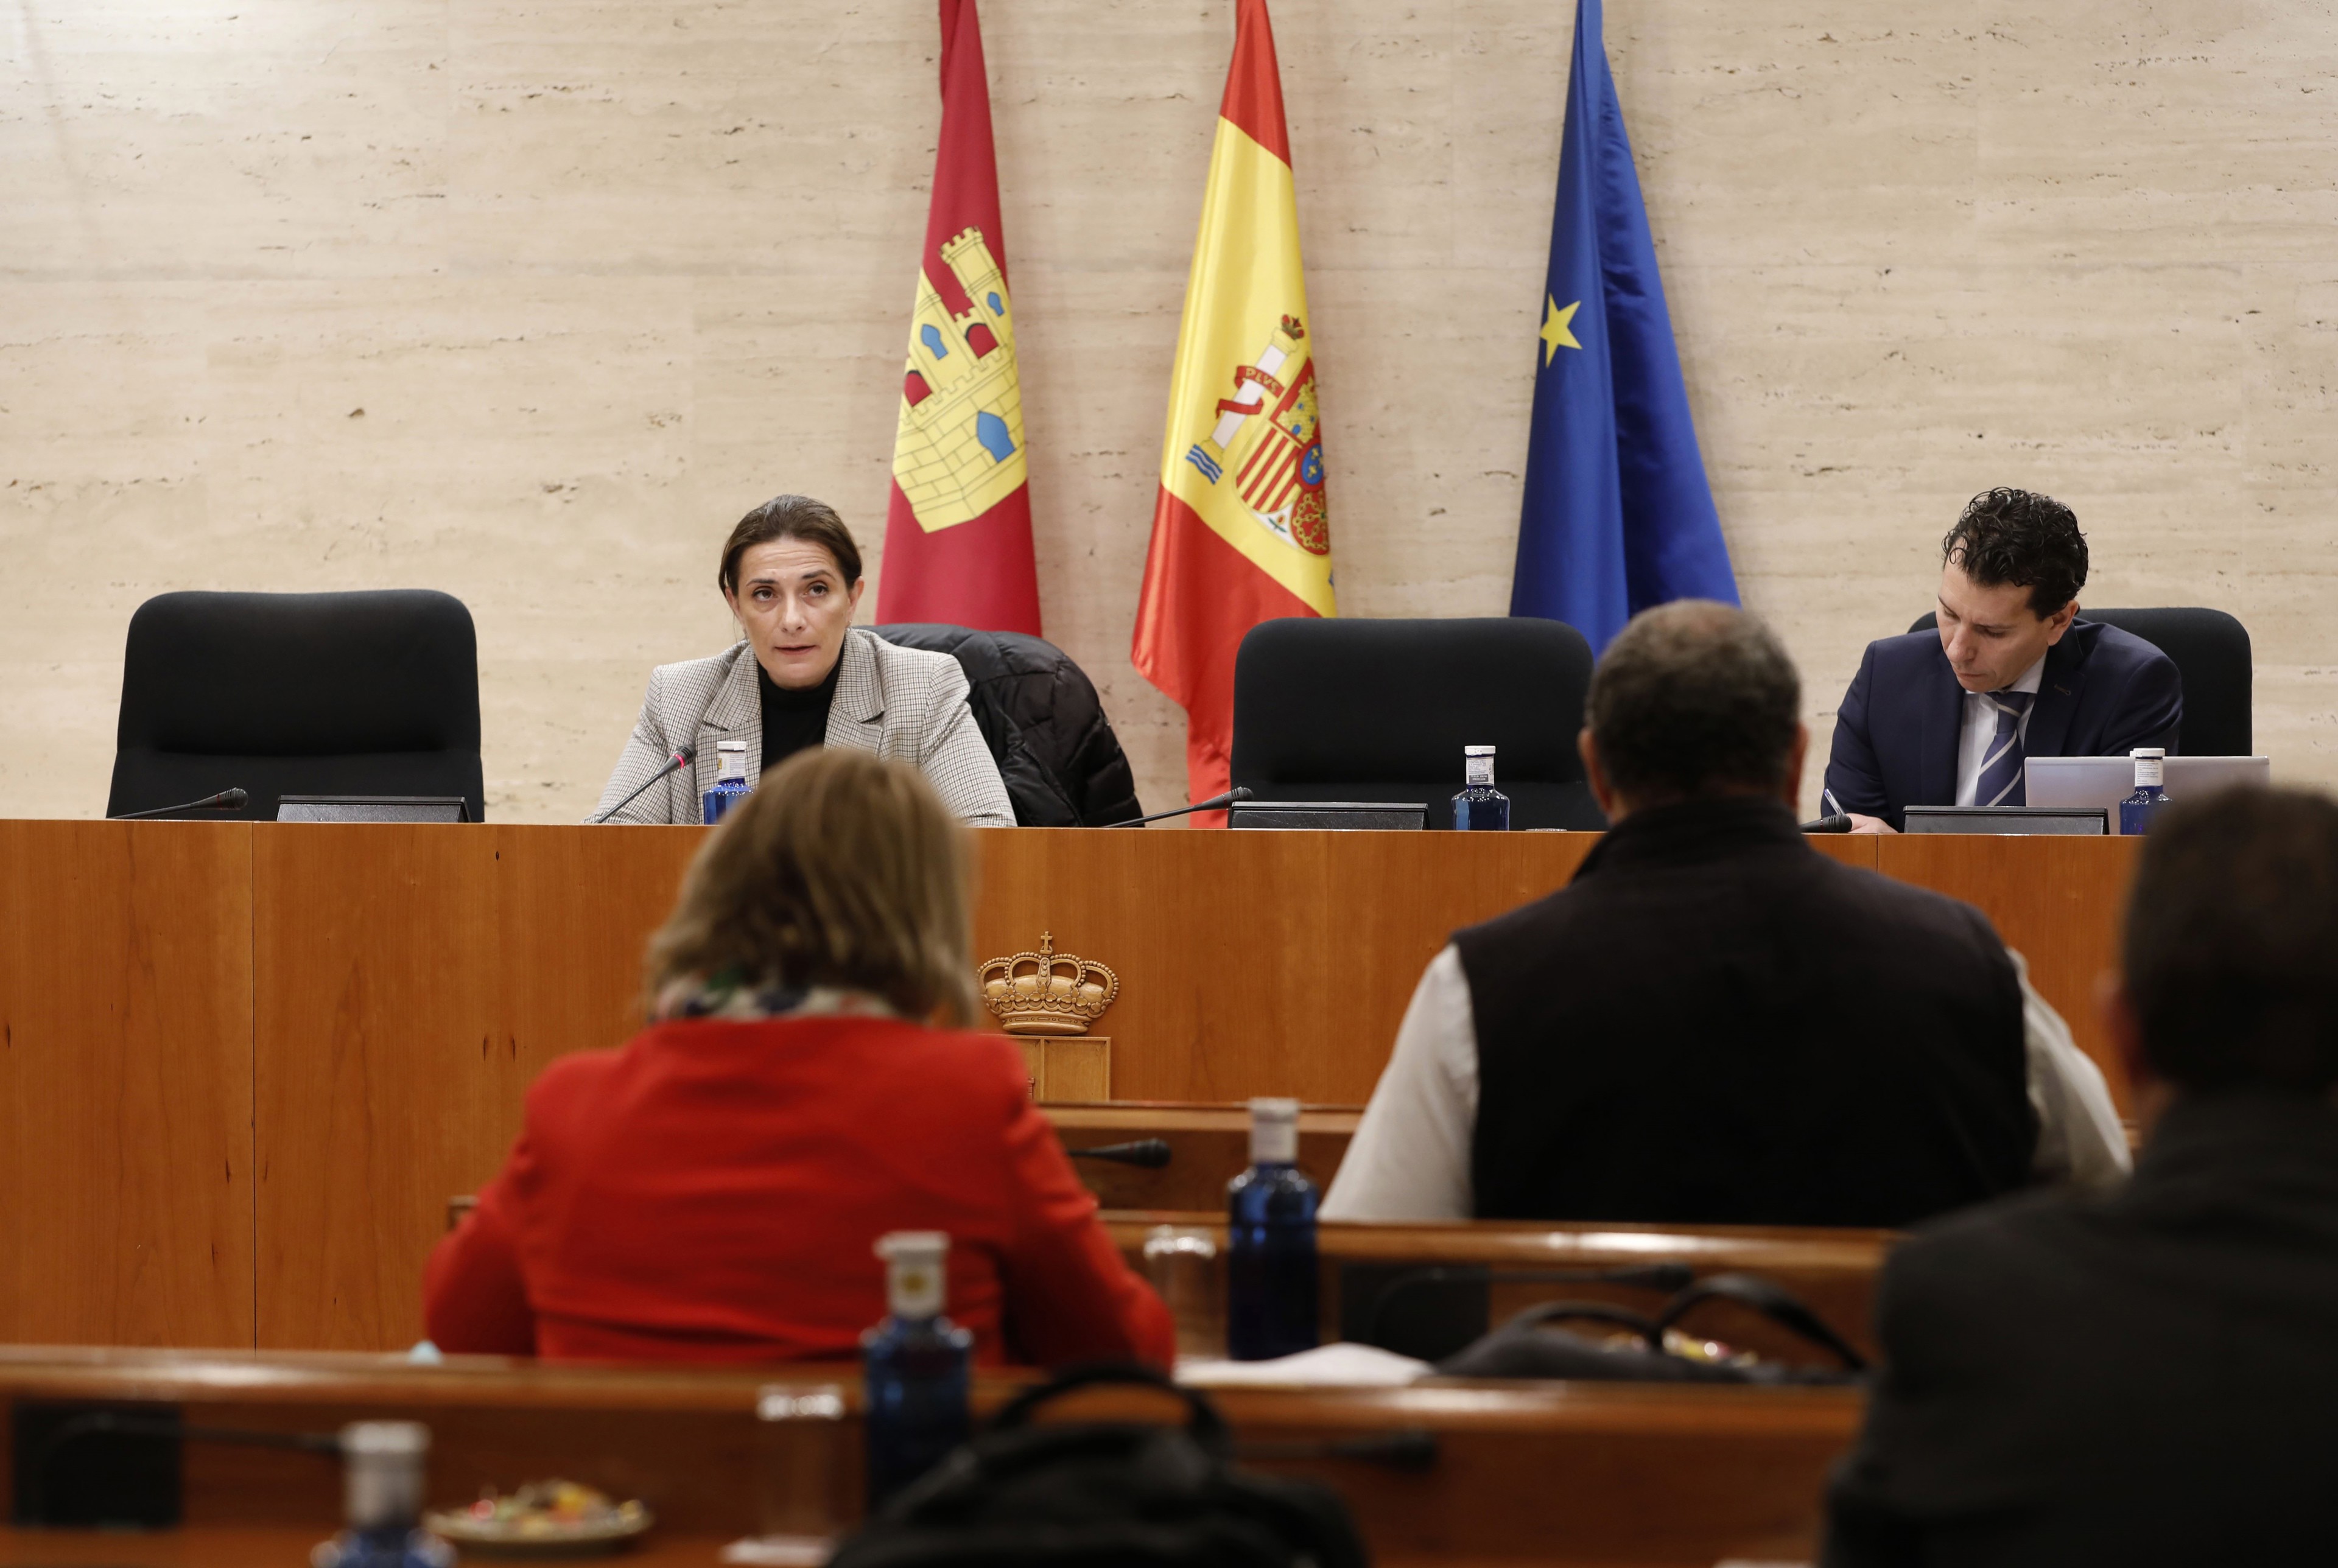 La Comisión de Desarrollo Sostenible presidida por Joaquina Saiz se ha reunido en la sala de Comisiones del edificio de los Grupos Parlamentarios de las Cortes regionales en Toledo.